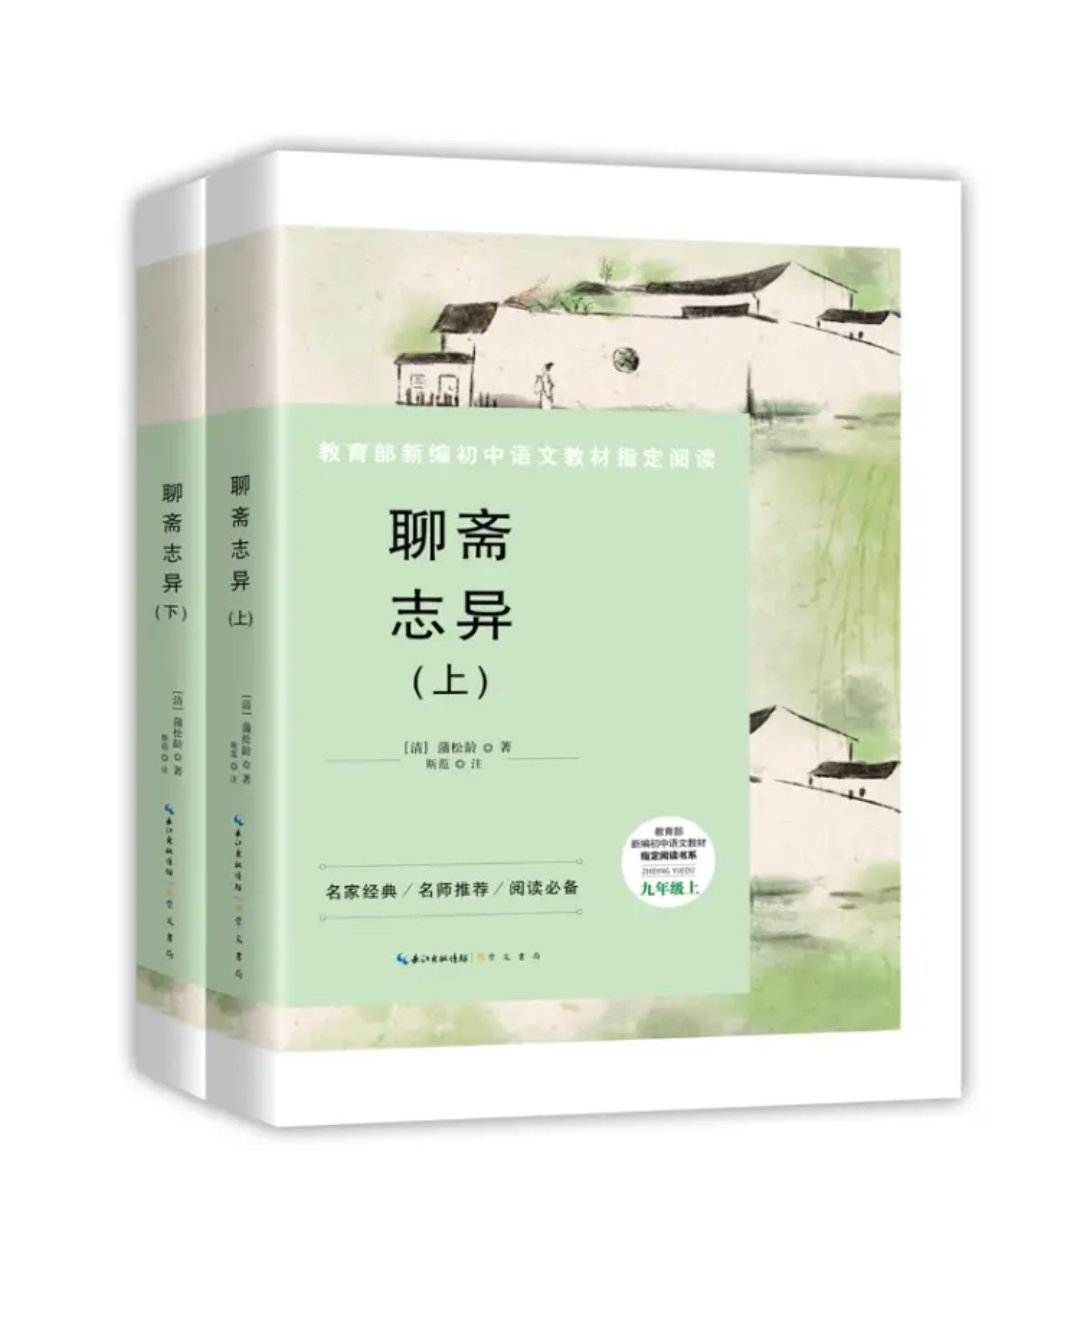 聊斋志异很好中国的名著，是每个人都应该读的好书，要好好学习天天向上，不过全是文言文，不过对于爱好中国名著的不算难事，原文言文才能更好的体现出它的魅力。